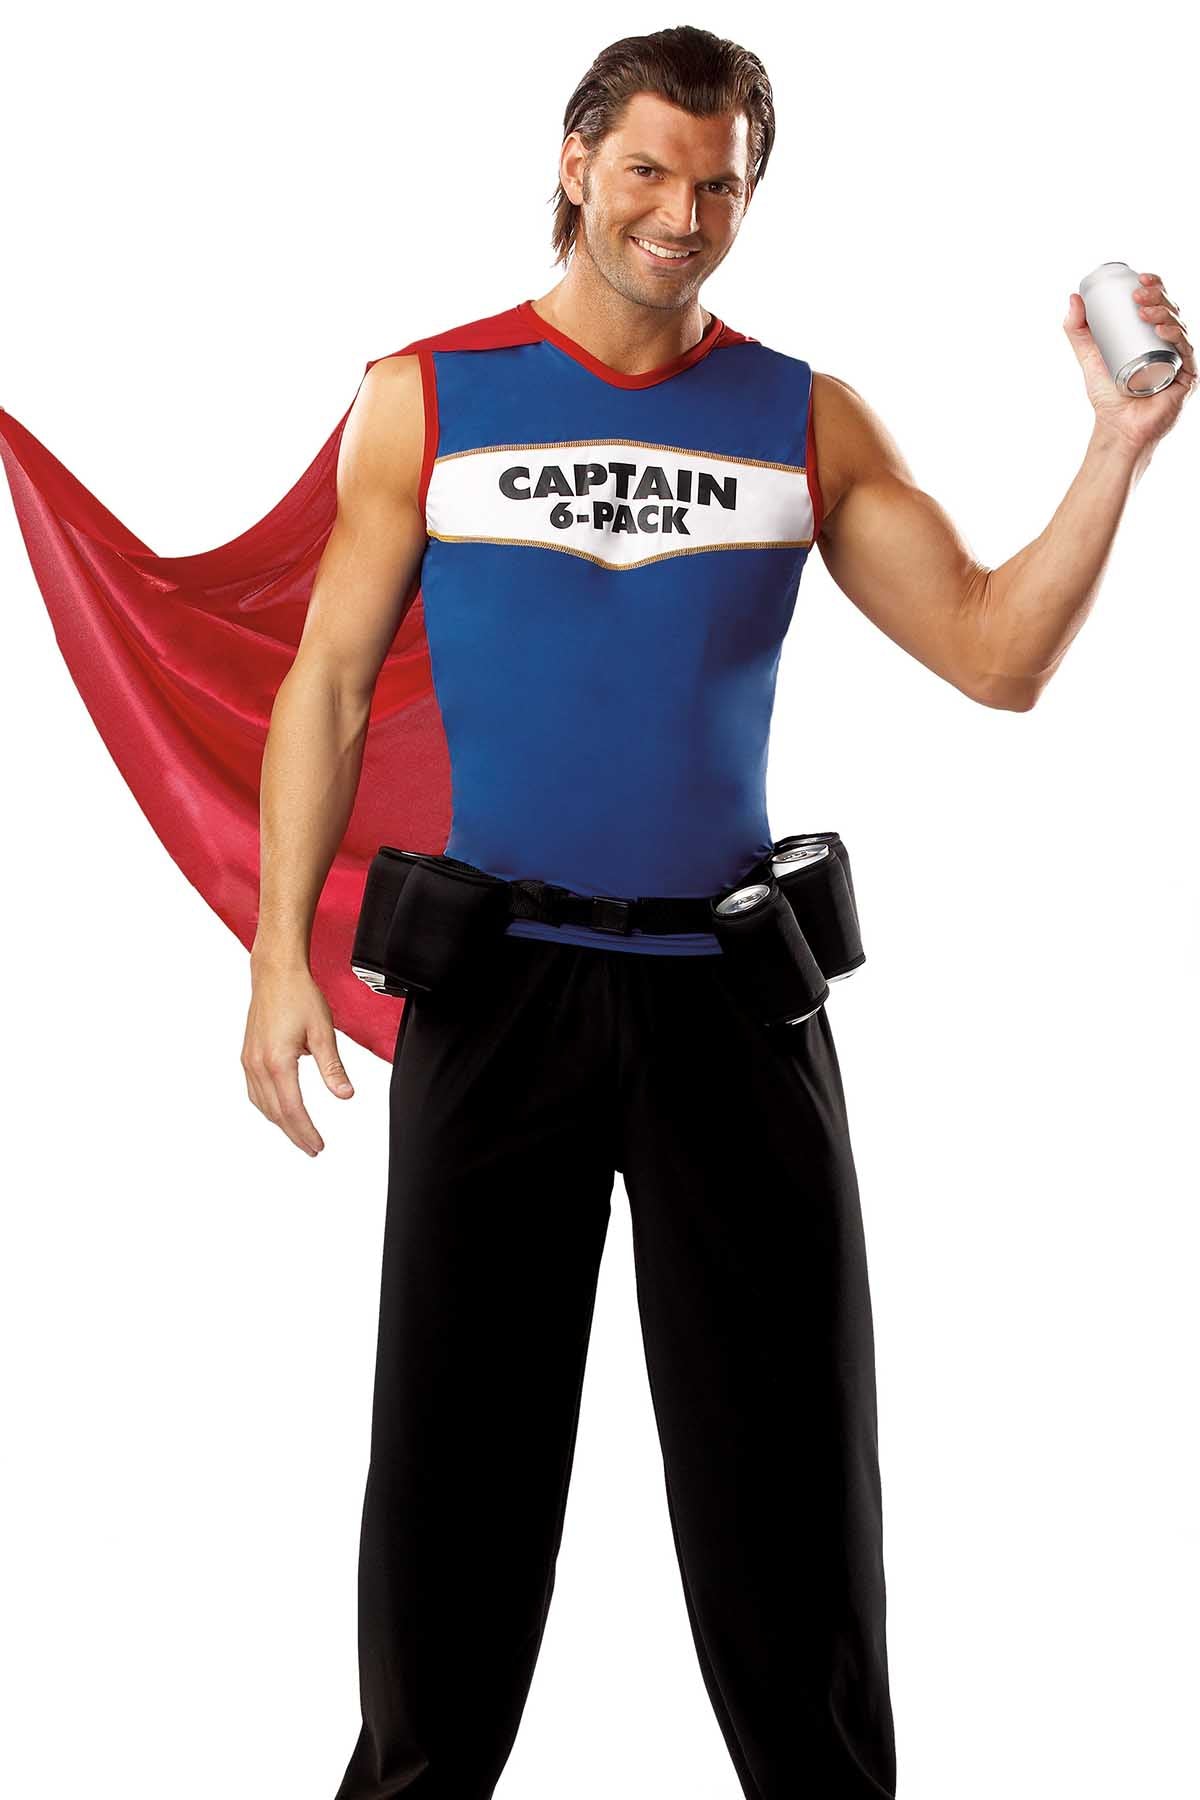 Coquette Captain 6-Pack Costume